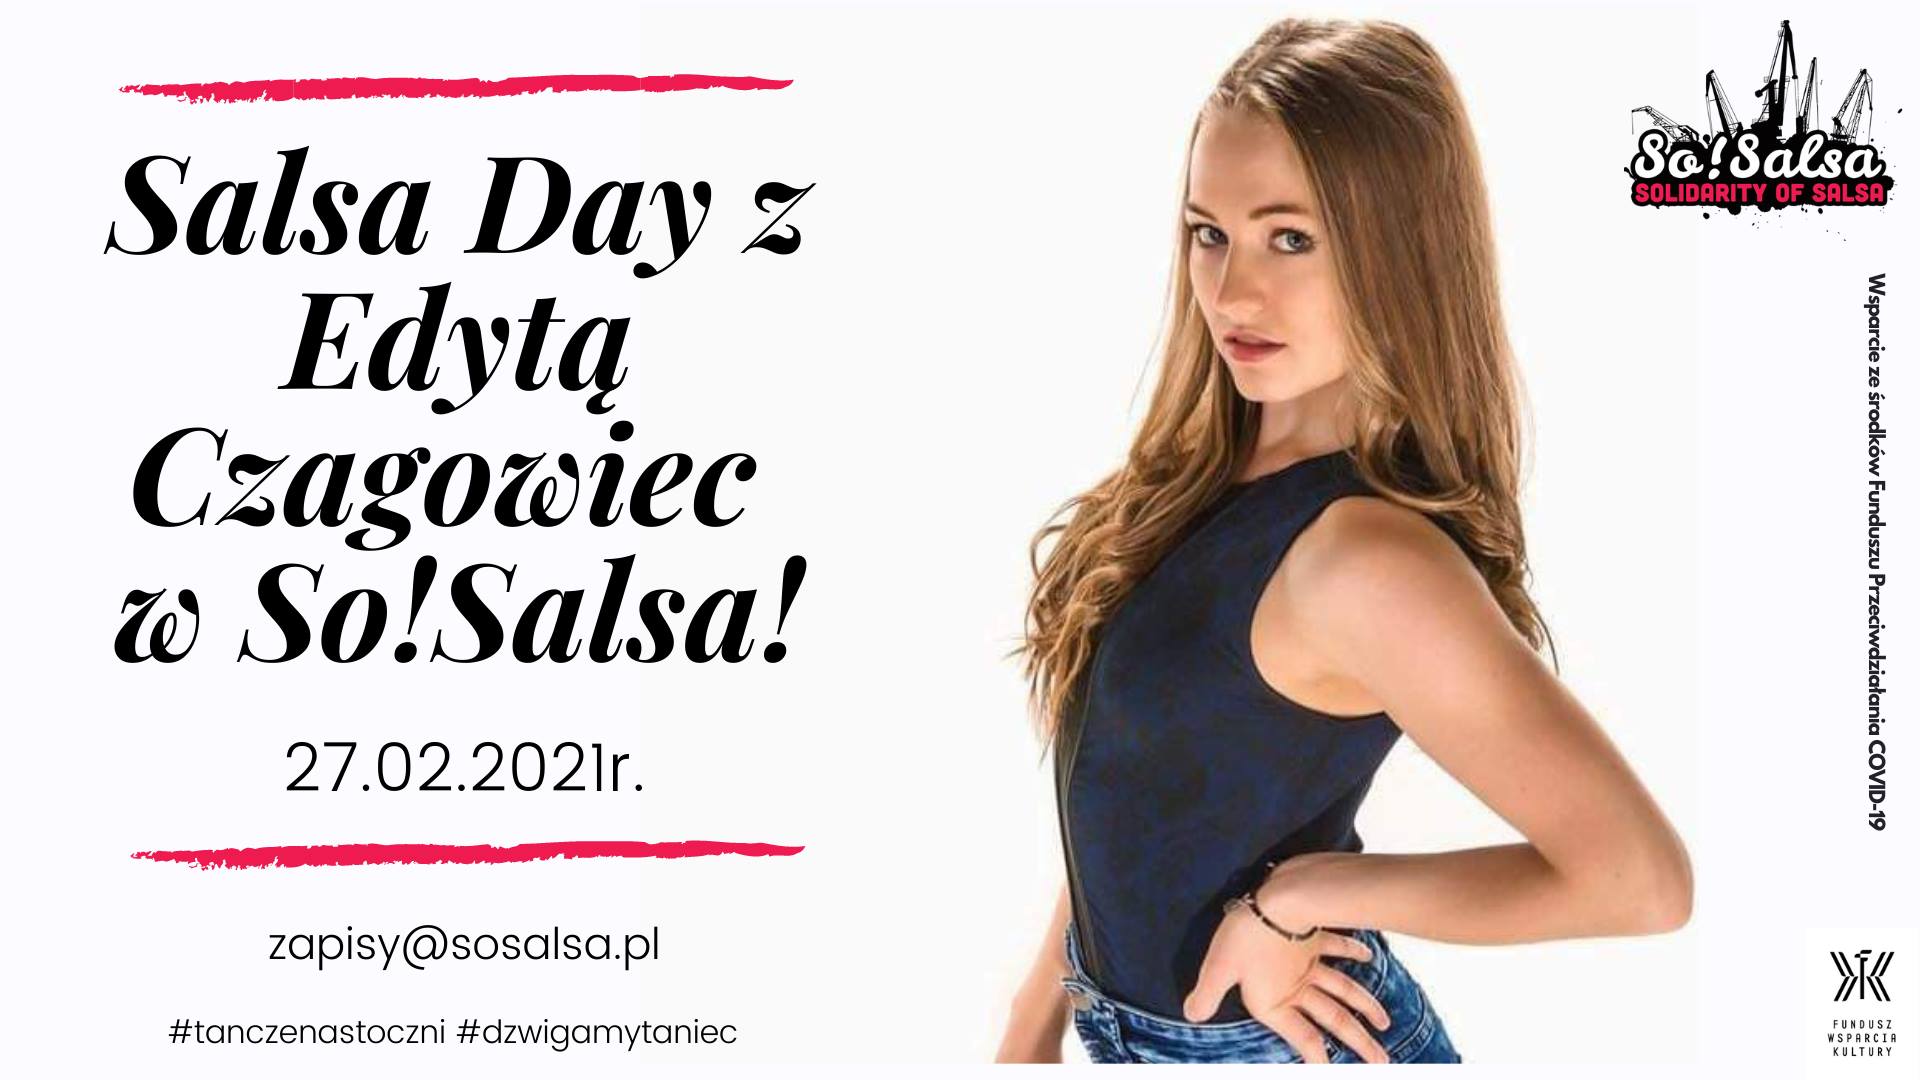 Salsa Day z Edytą Czagowiec w So!Salsa